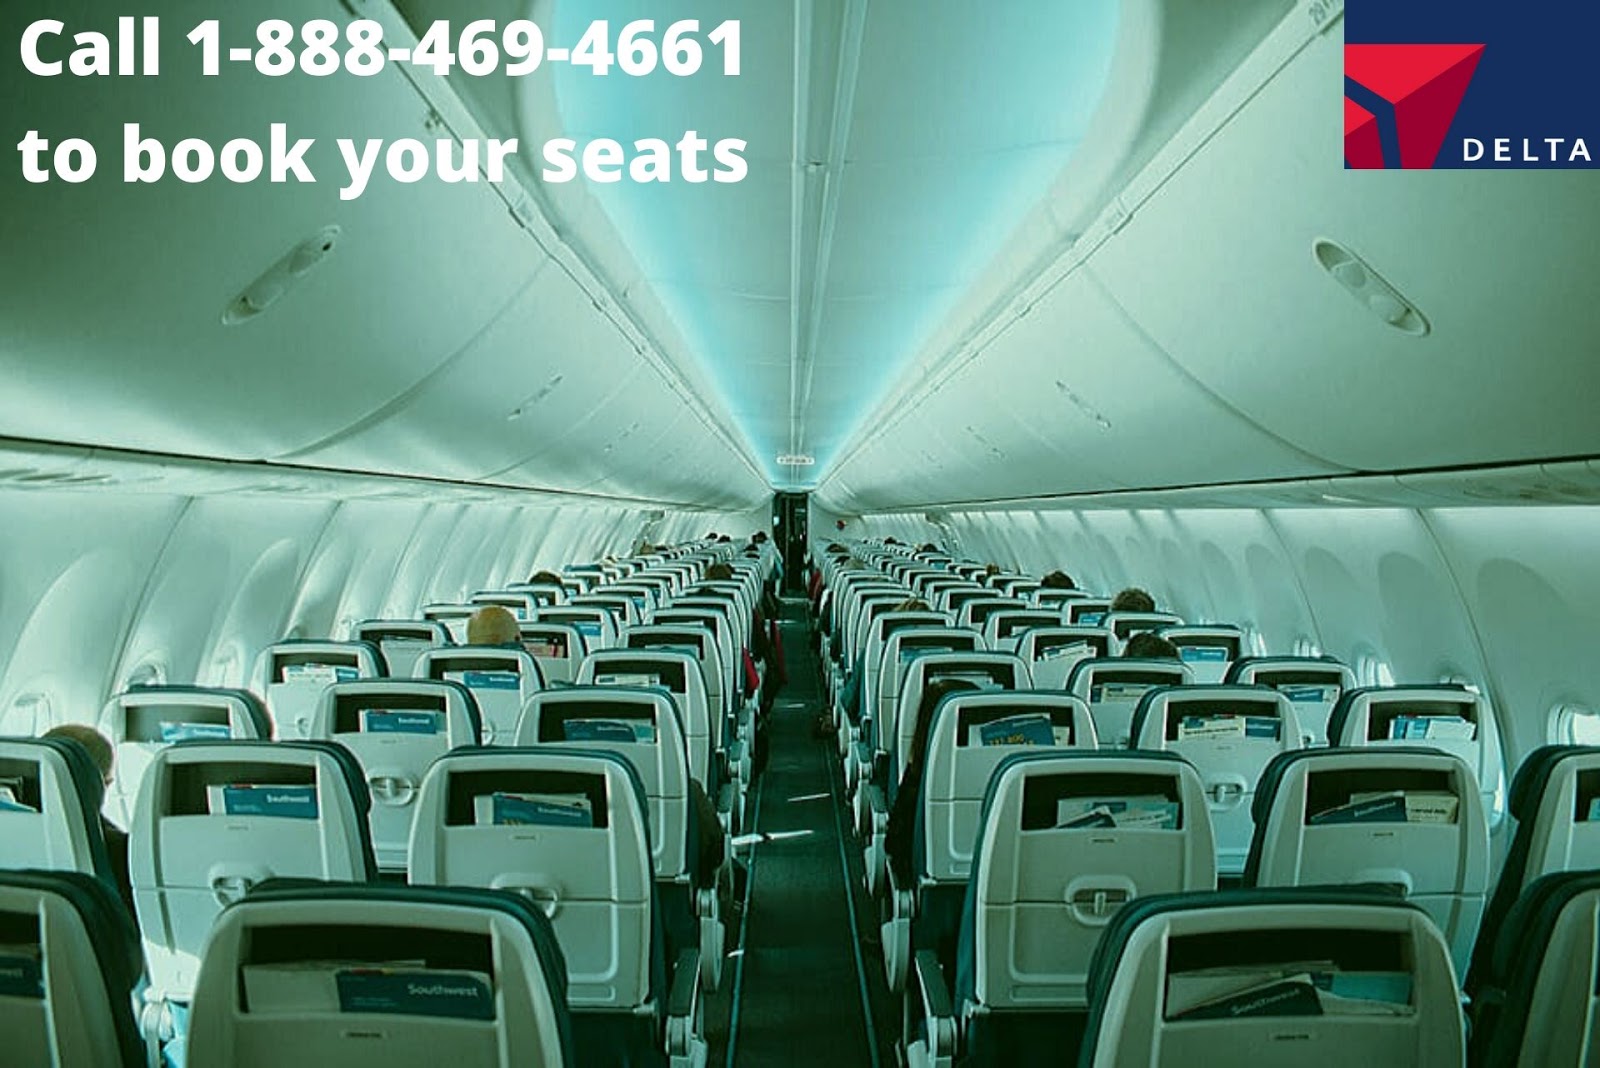 Delta Airlines Seats | flight deals & reservations